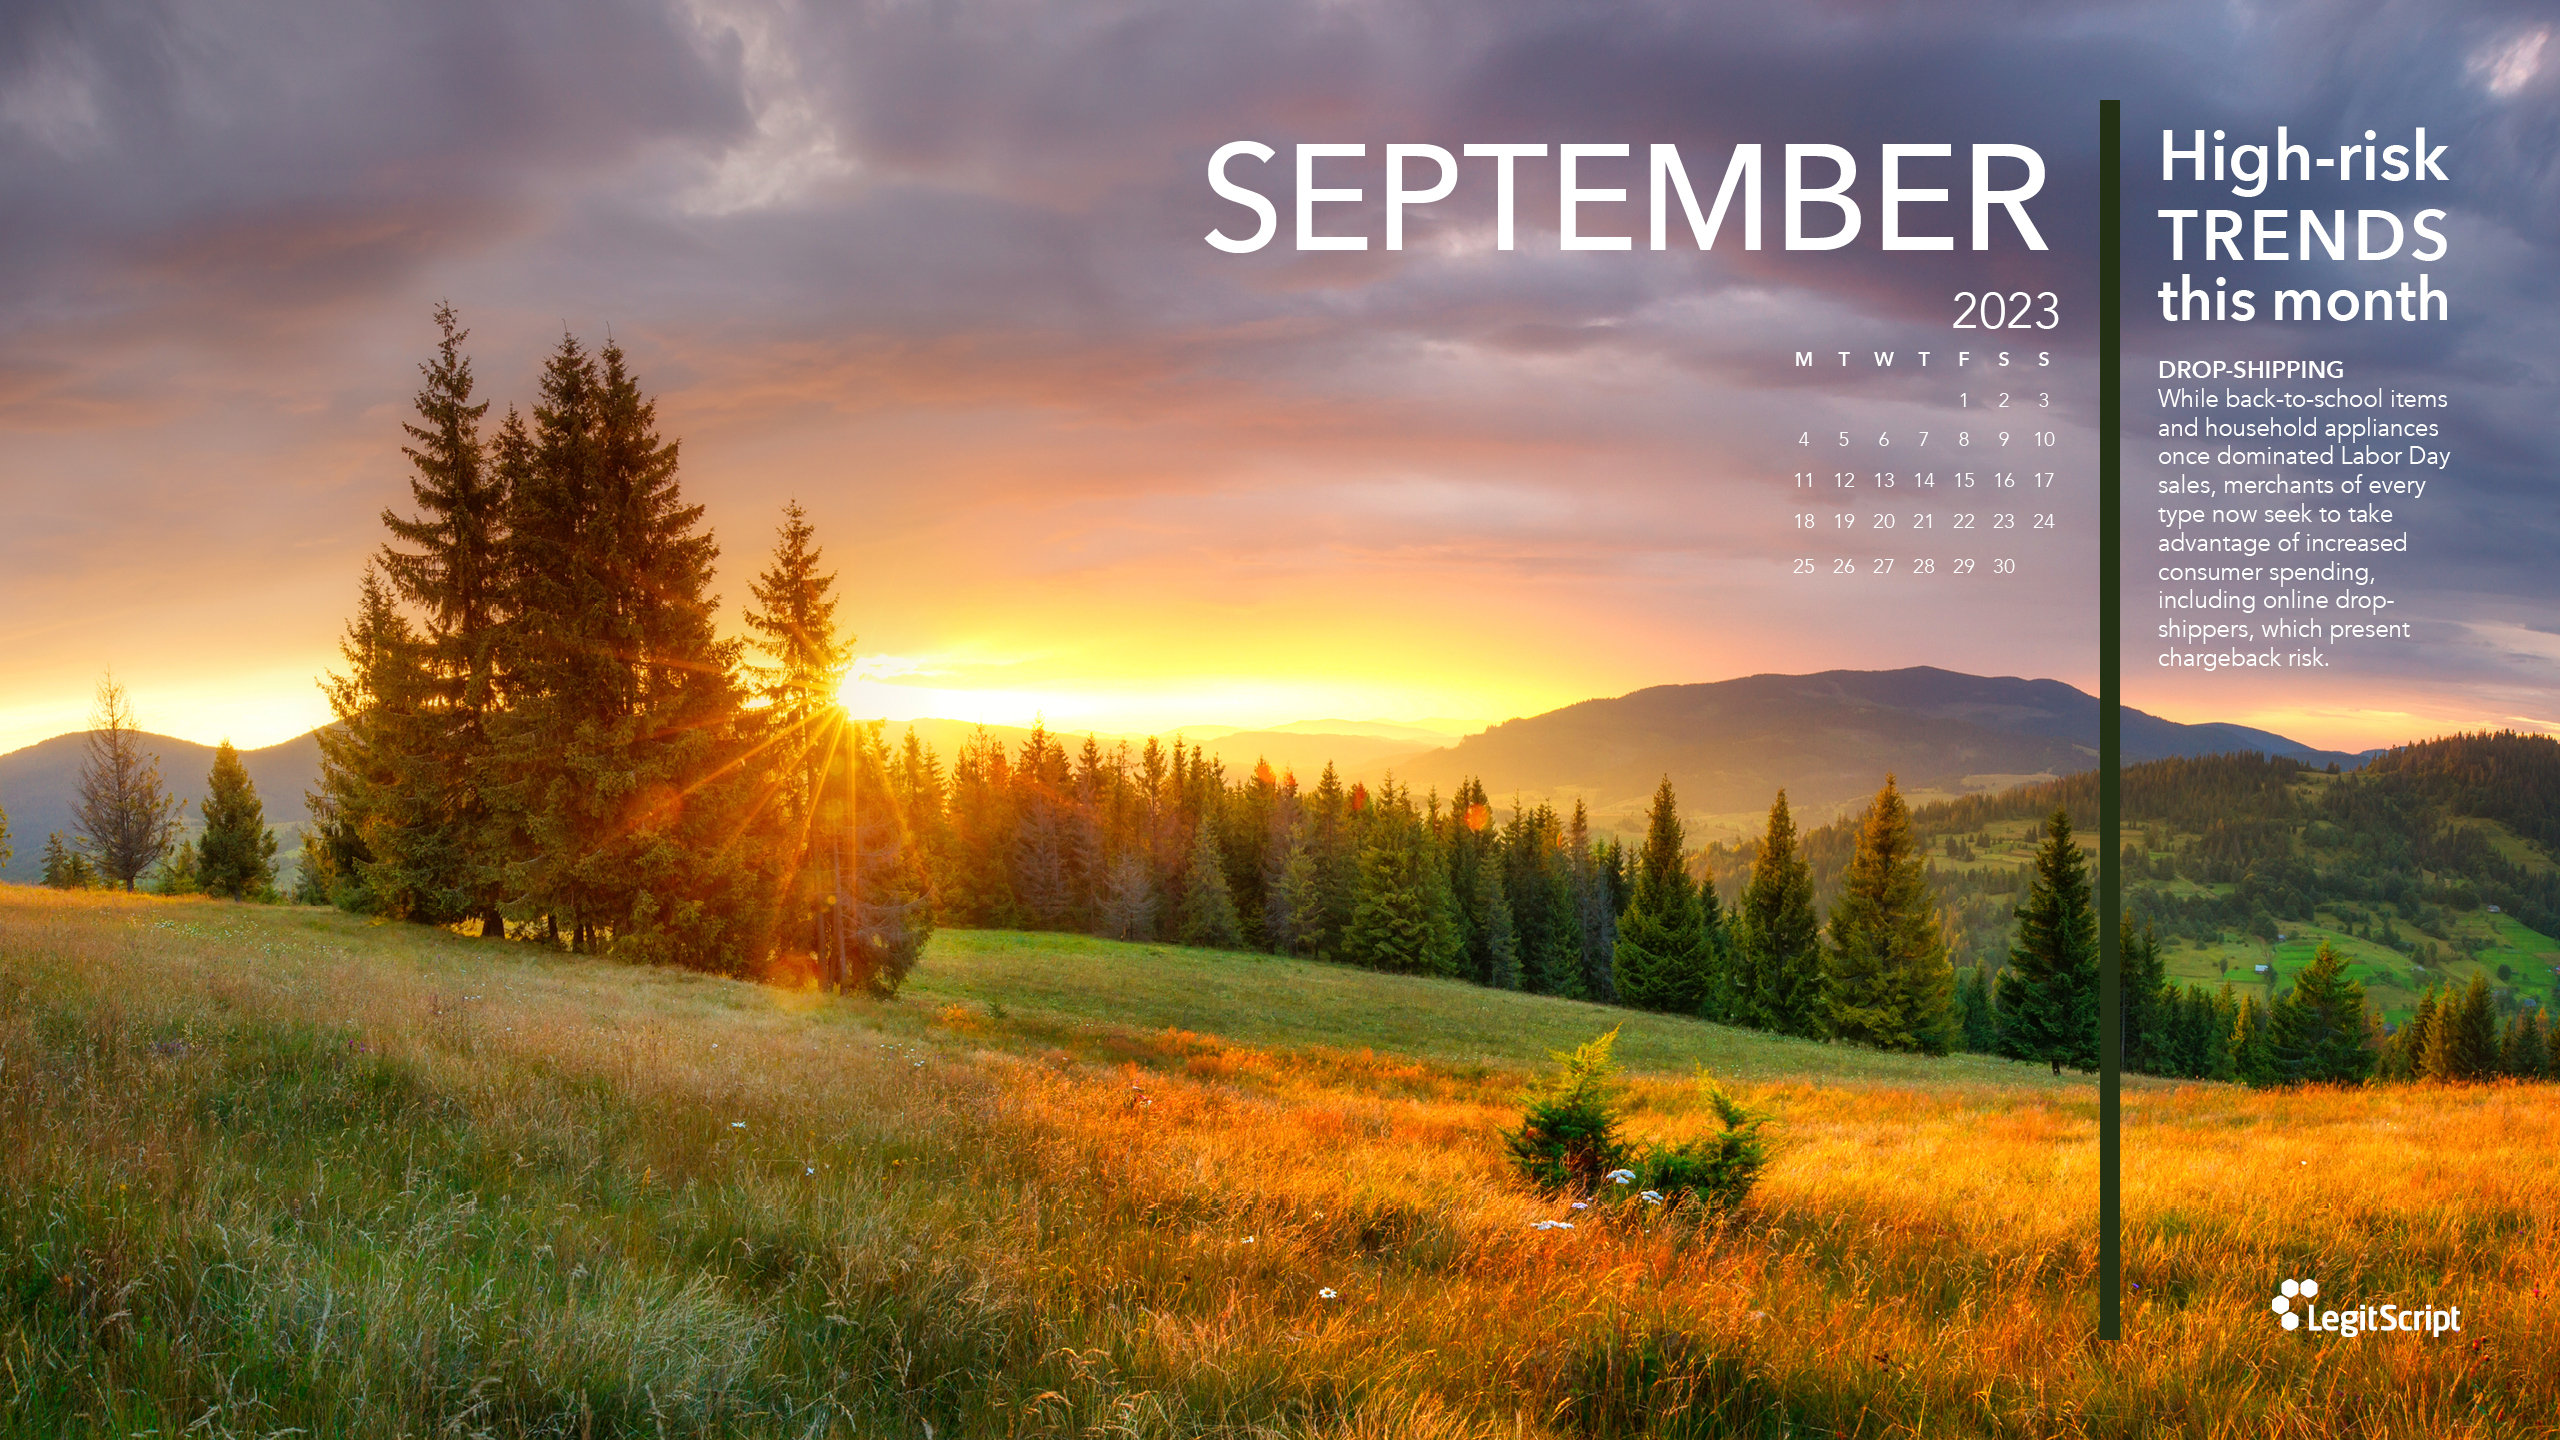 Seasonal High Risk Trends desktop background for September.